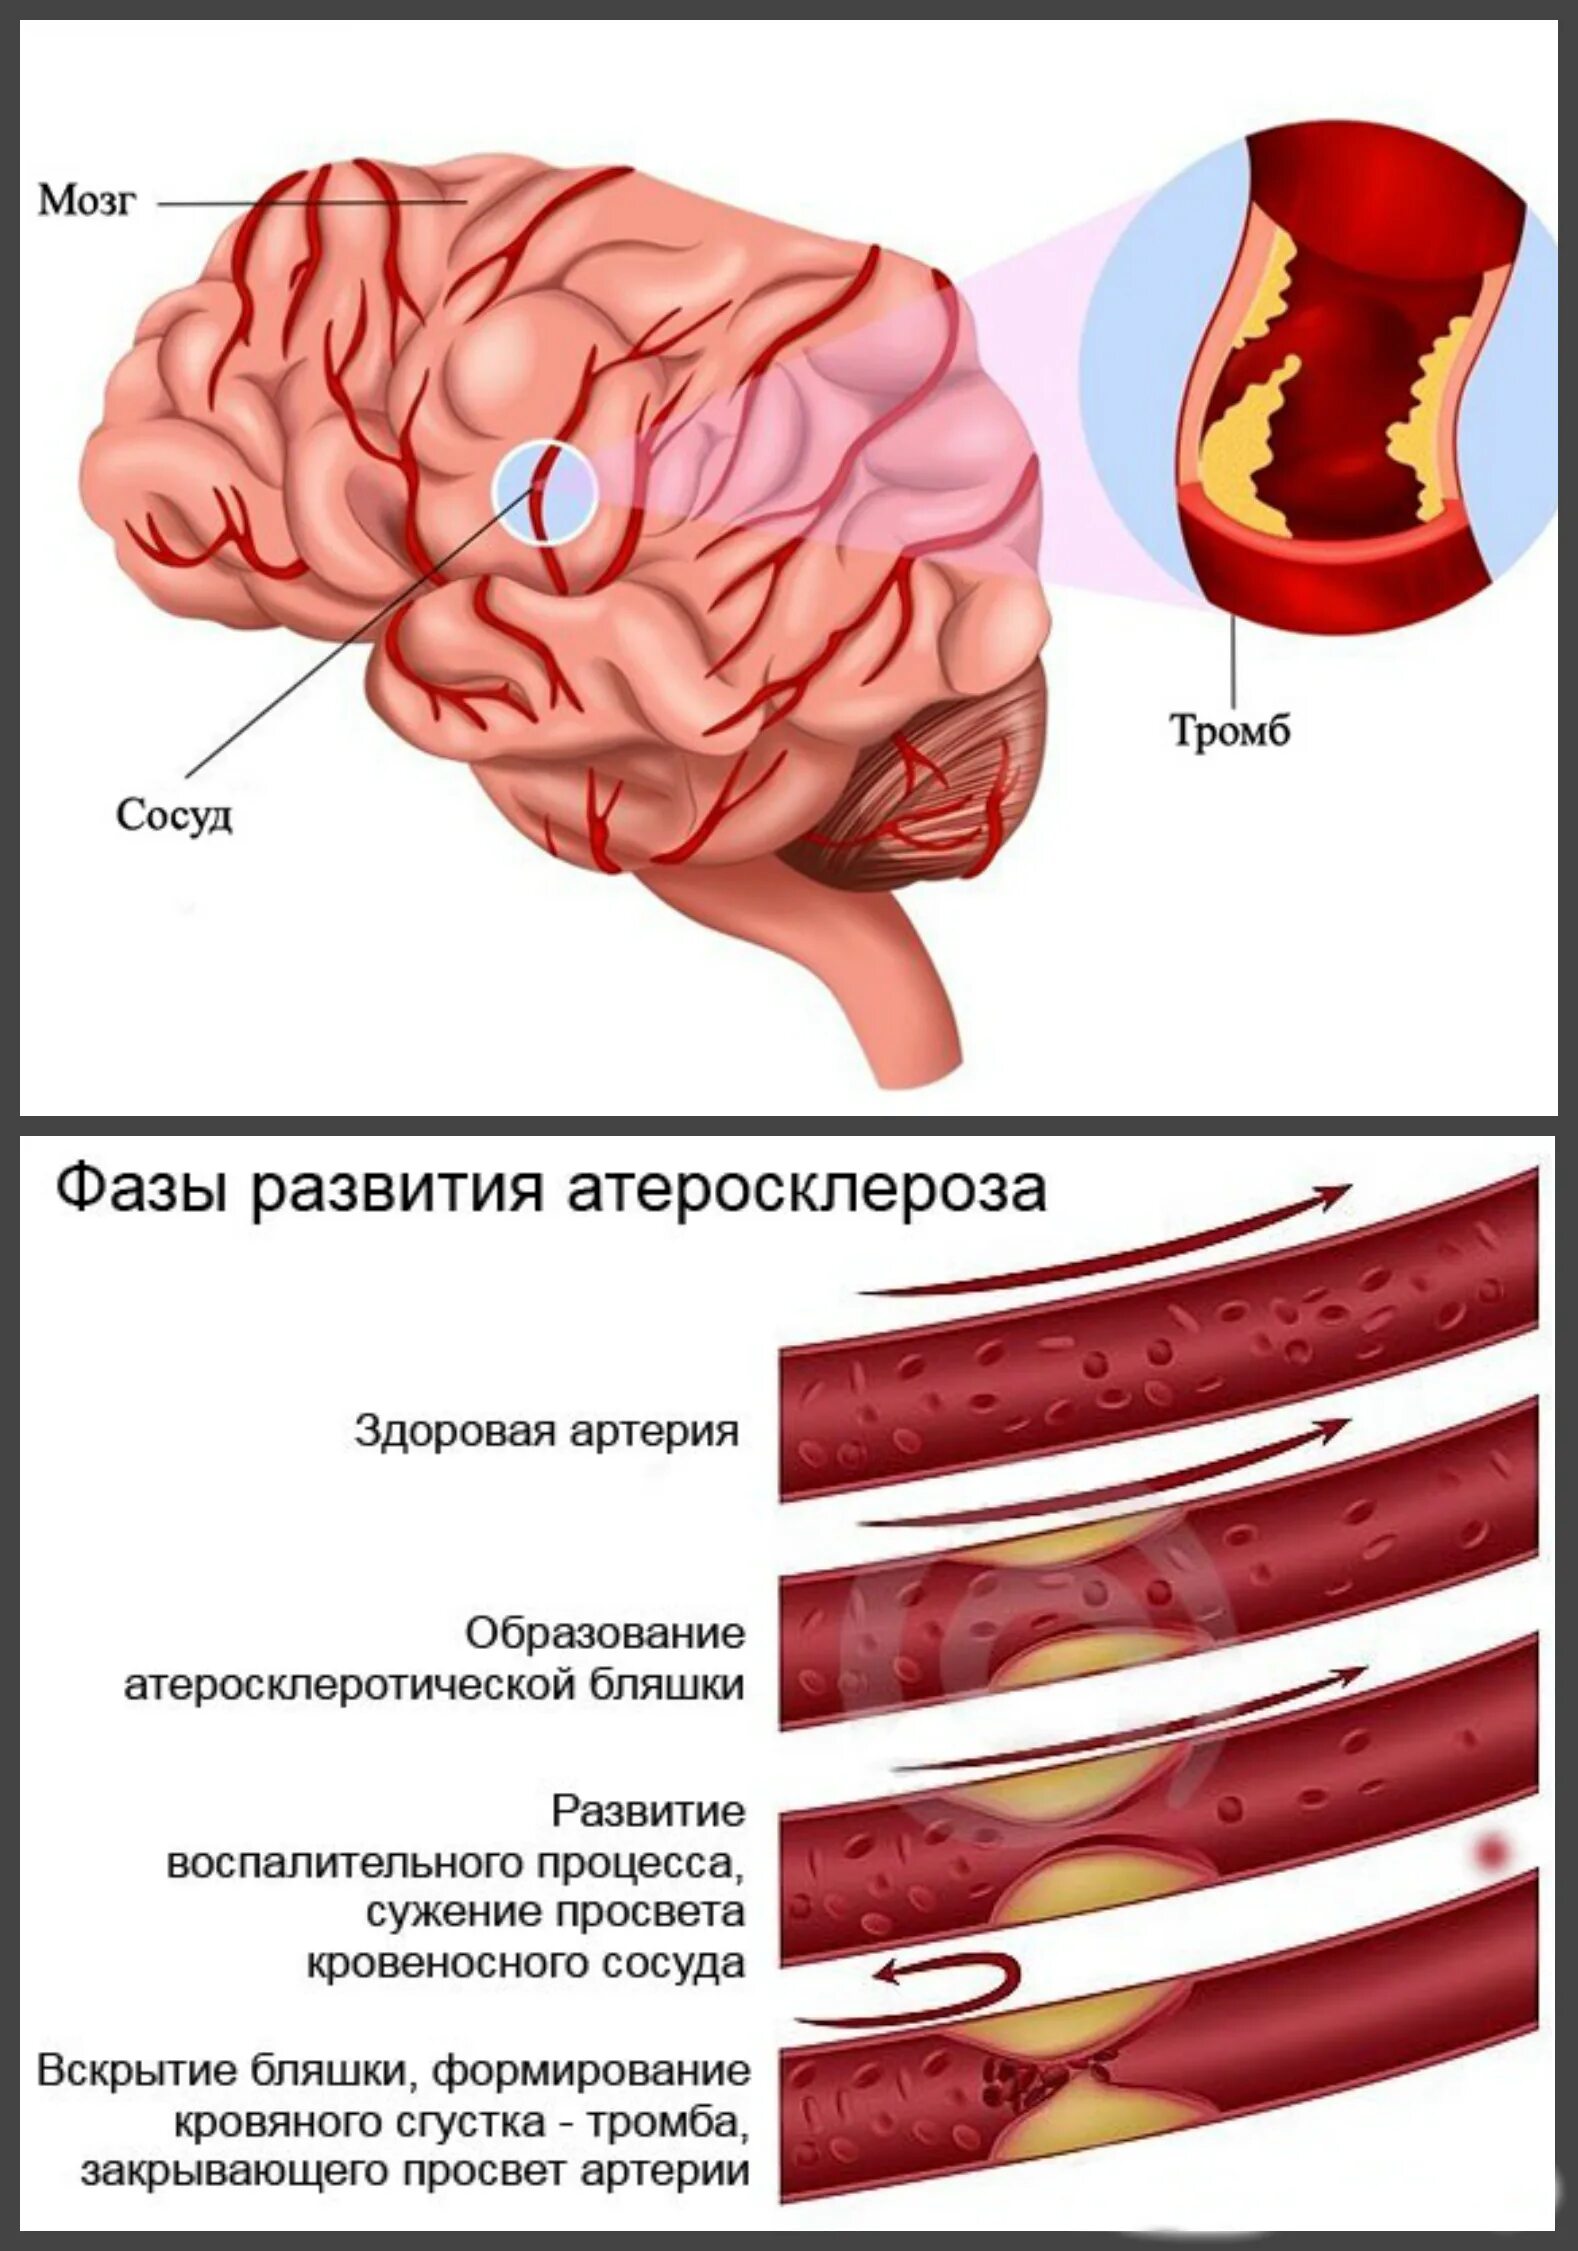 Атеросклероз церебральных сосудов симптомы. Атеросклероз сосудов головного мозга. Атеросклероз сосудов головы. Атеросклероз артерий головного мозга. Атеросклероз сосудов головы и шеи.